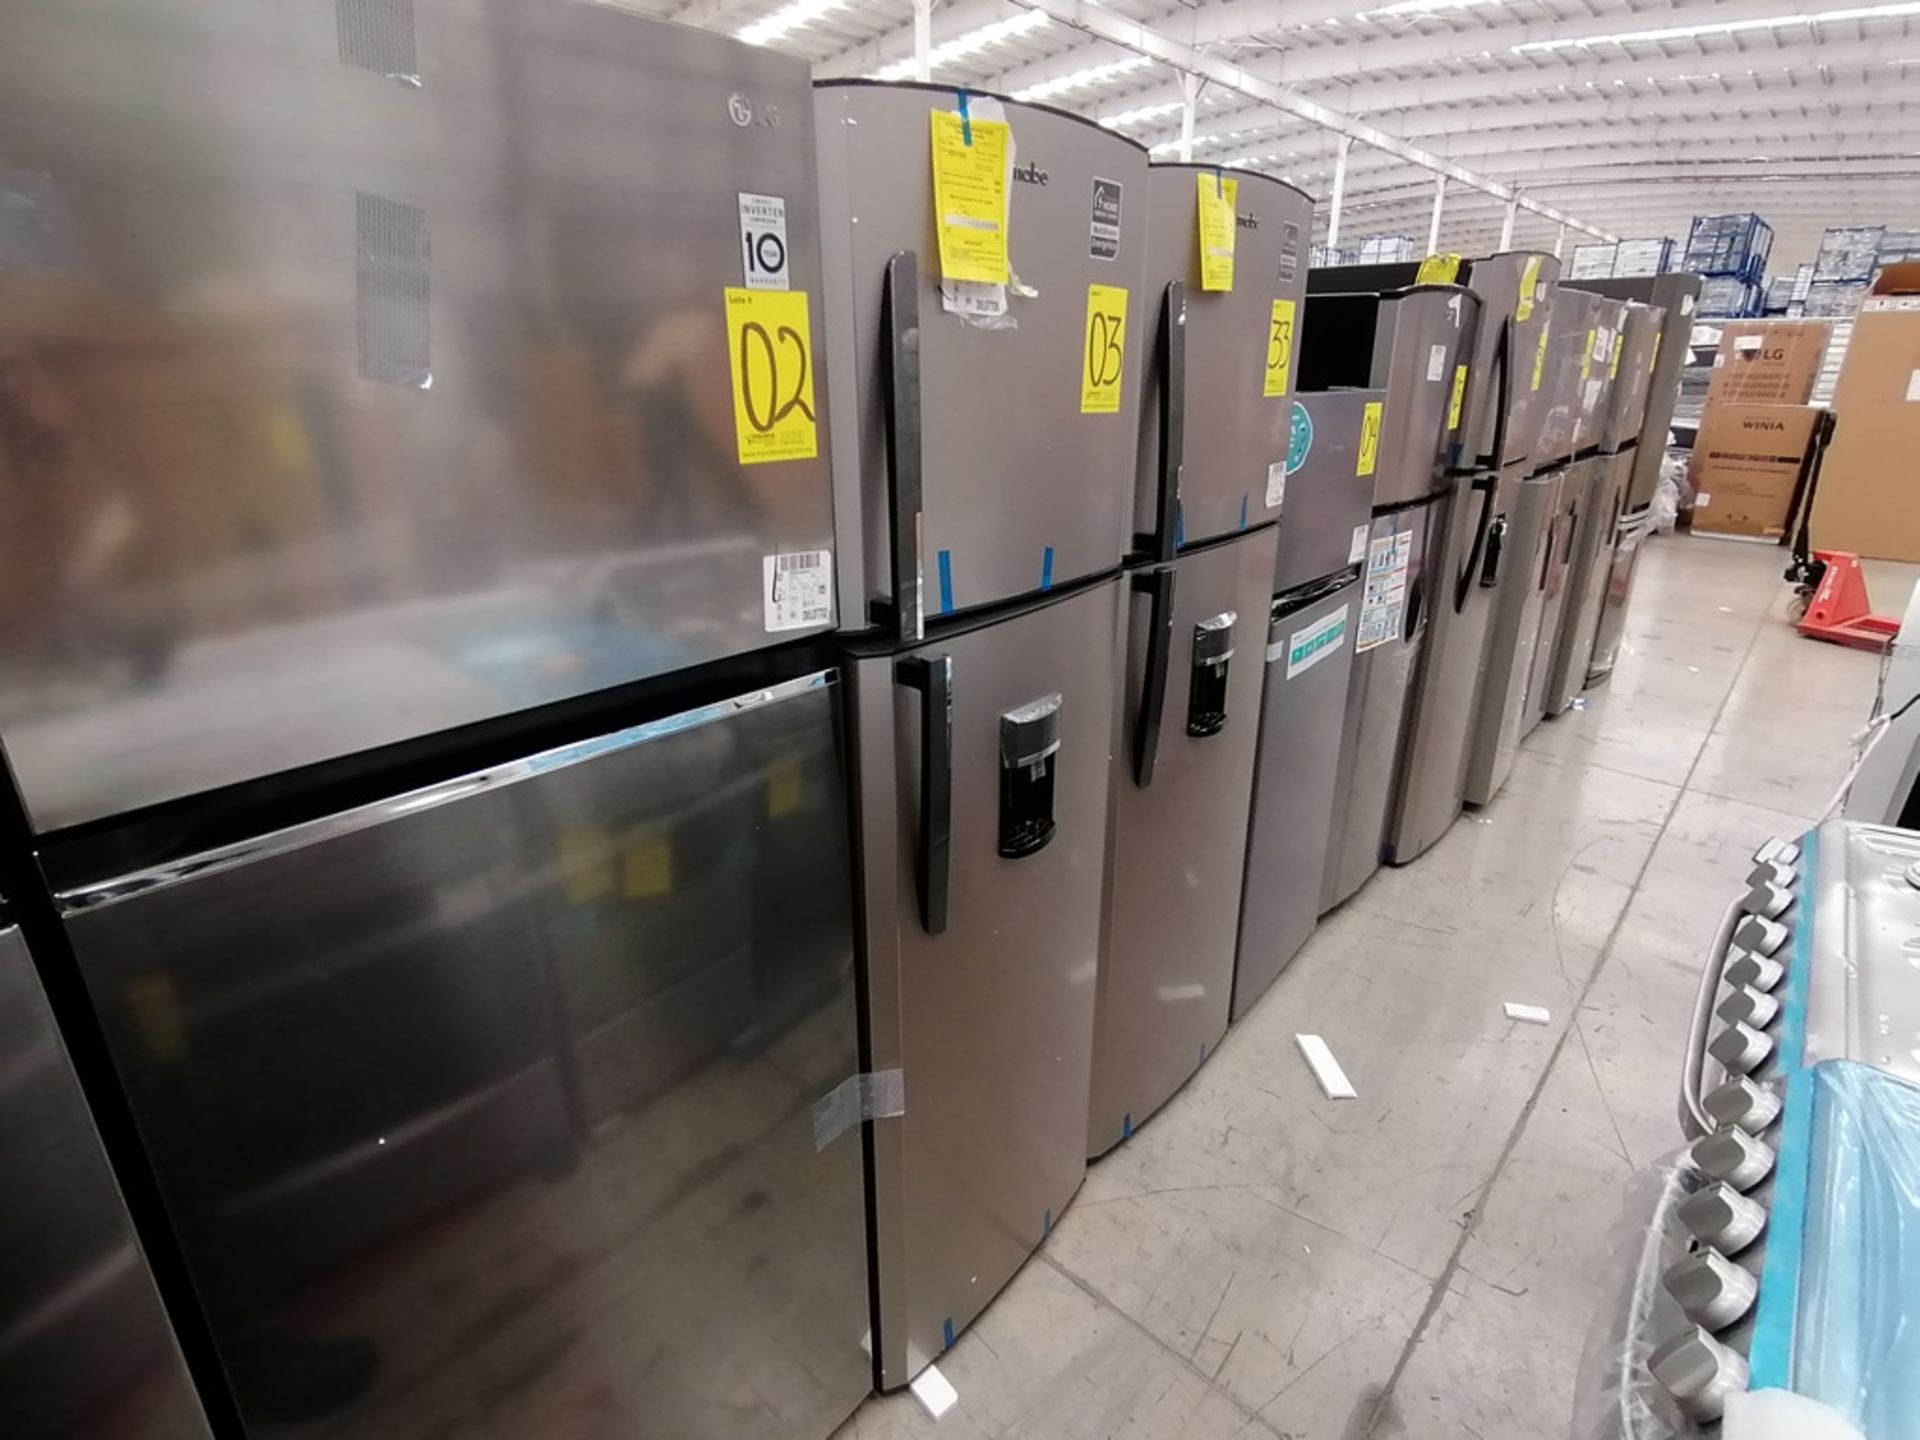 1 Refrigerador con Dispensador de Agua Marca Mabe, Color Gris, Modelo RMA300FJMR, Serie 2112B707142 - Image 6 of 13